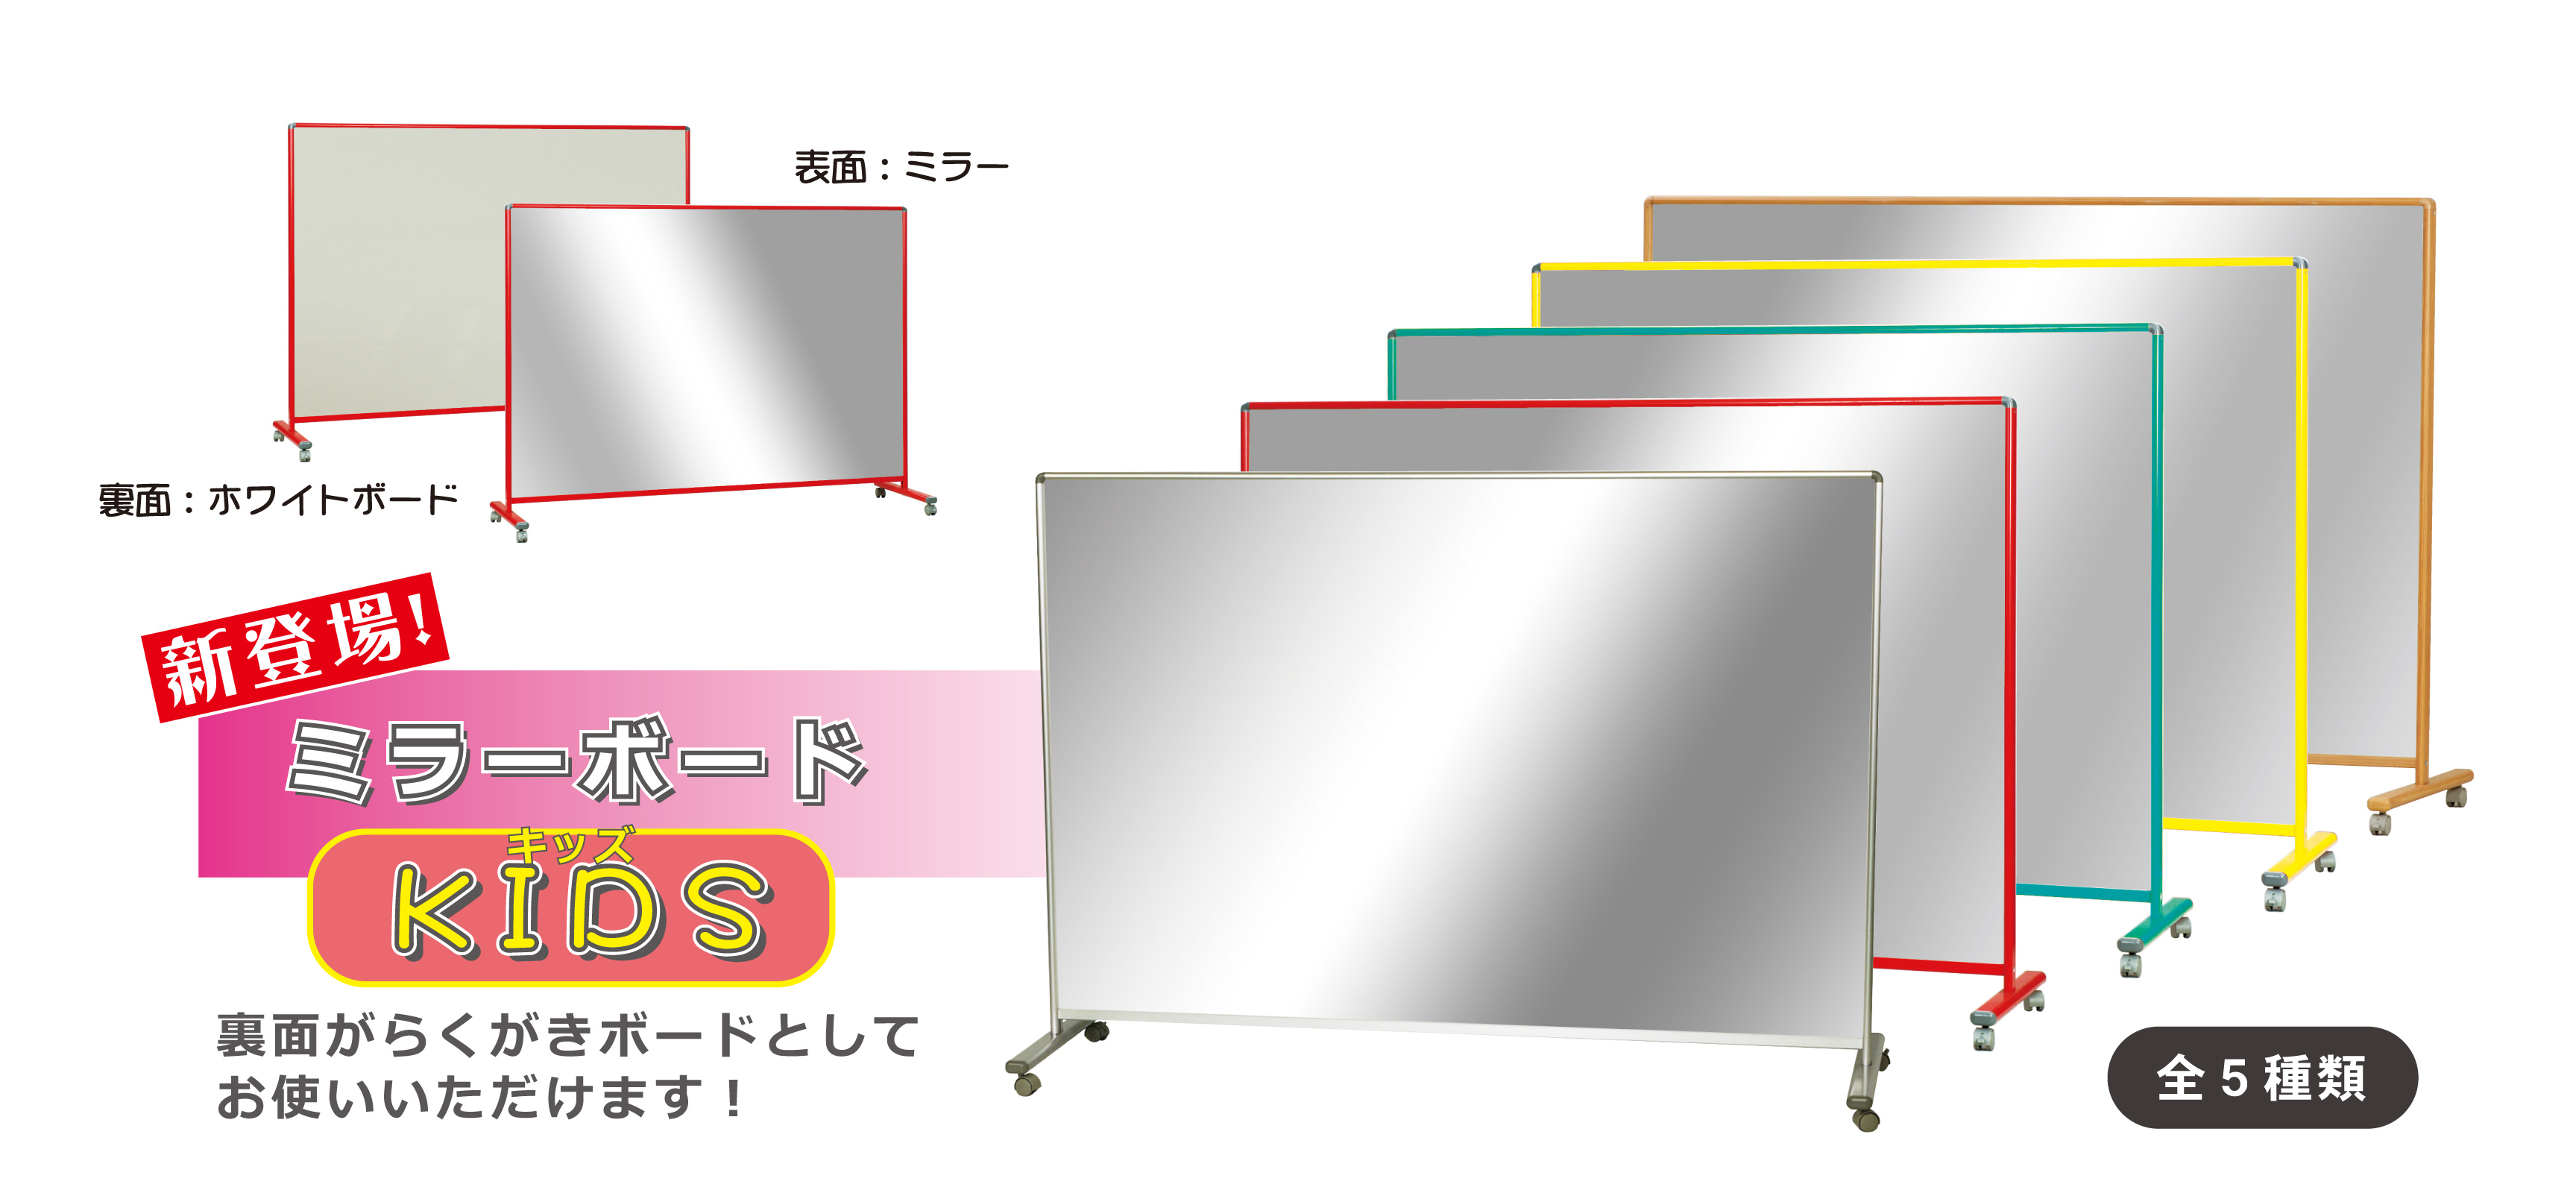 ファッション webショップ TAKIGAWA裏面がらくがきボードとして使えるミラーボードキッズ イエロー枠